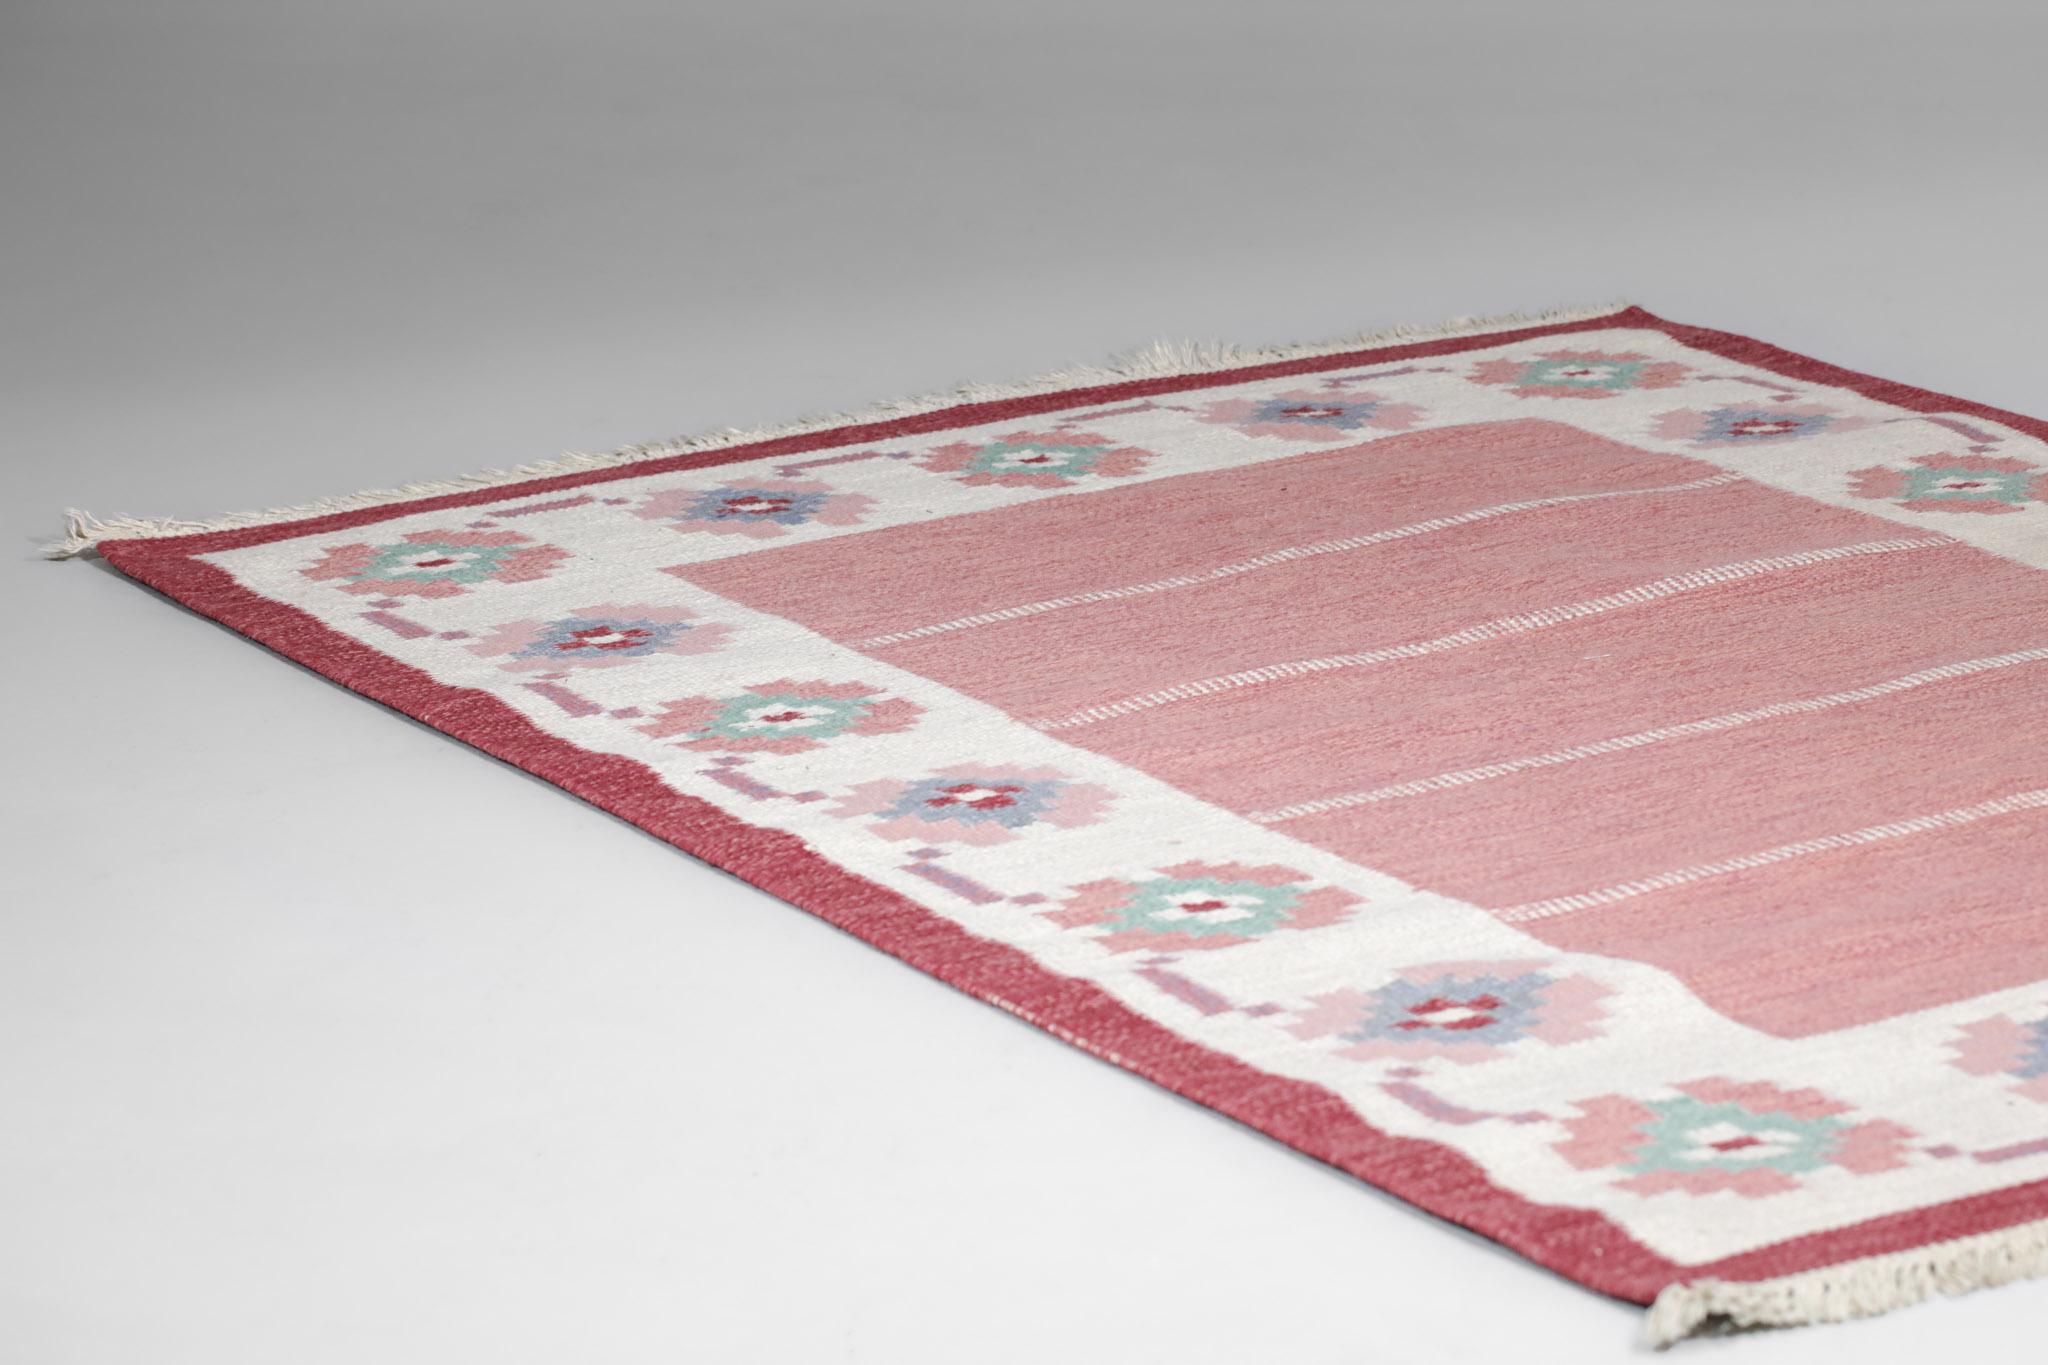 Sehr großer skandinavischer Teppich aus den 60er Jahren. Flachgewebetechnik (Rillakan), Wolle auf Leinen. Traditionelle geometrische Muster in den Farben Rosa, Weiß und Blau. Handgewebt in Schweden in den 50er und 60er Jahren. Ausgezeichneter